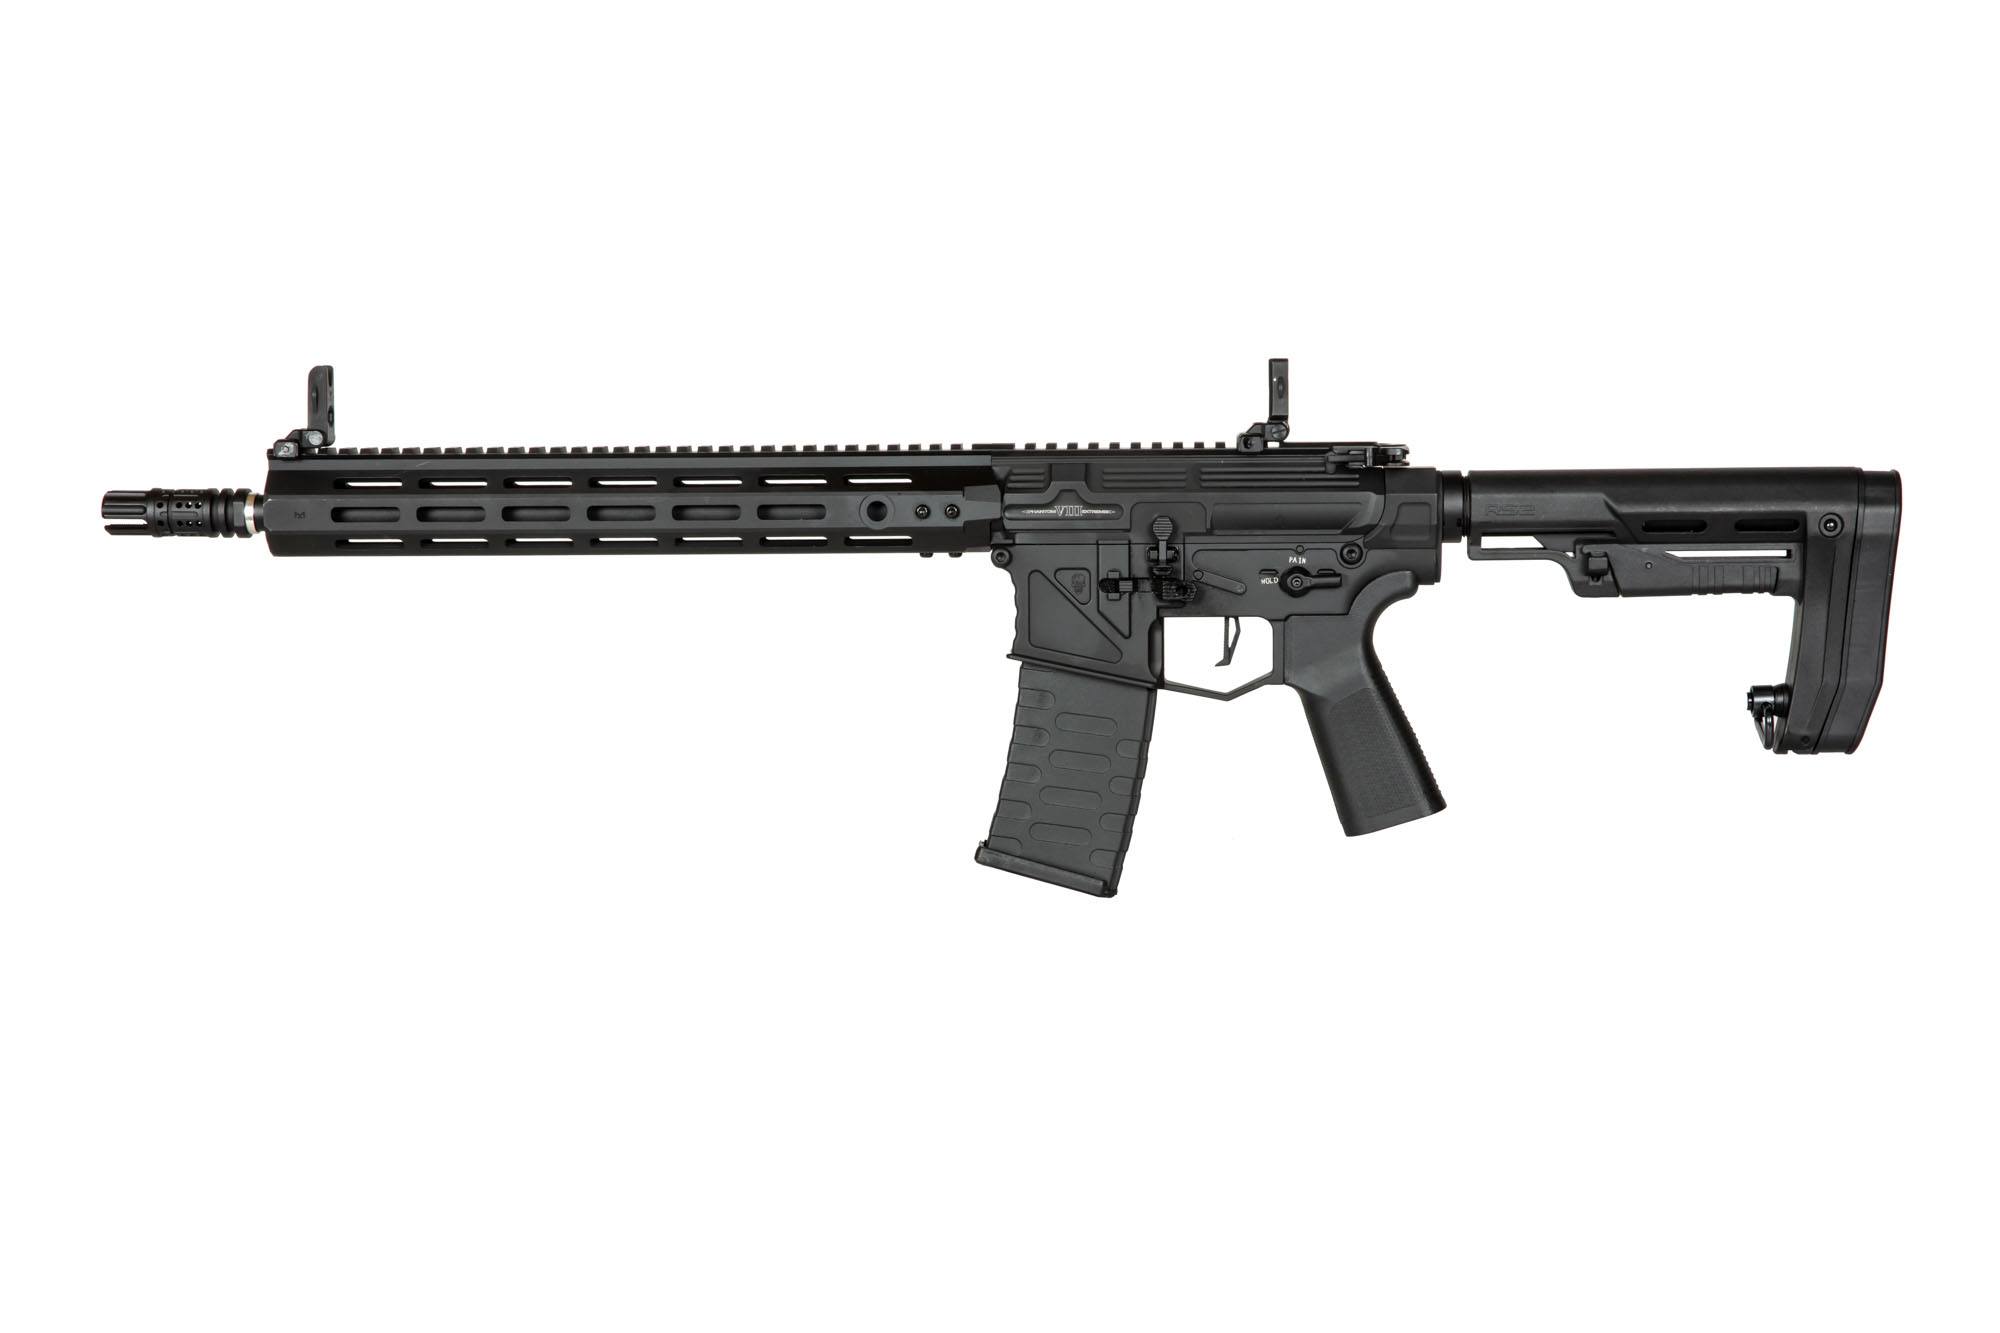 PER708 SDU2.0 Carbine Replica - Black